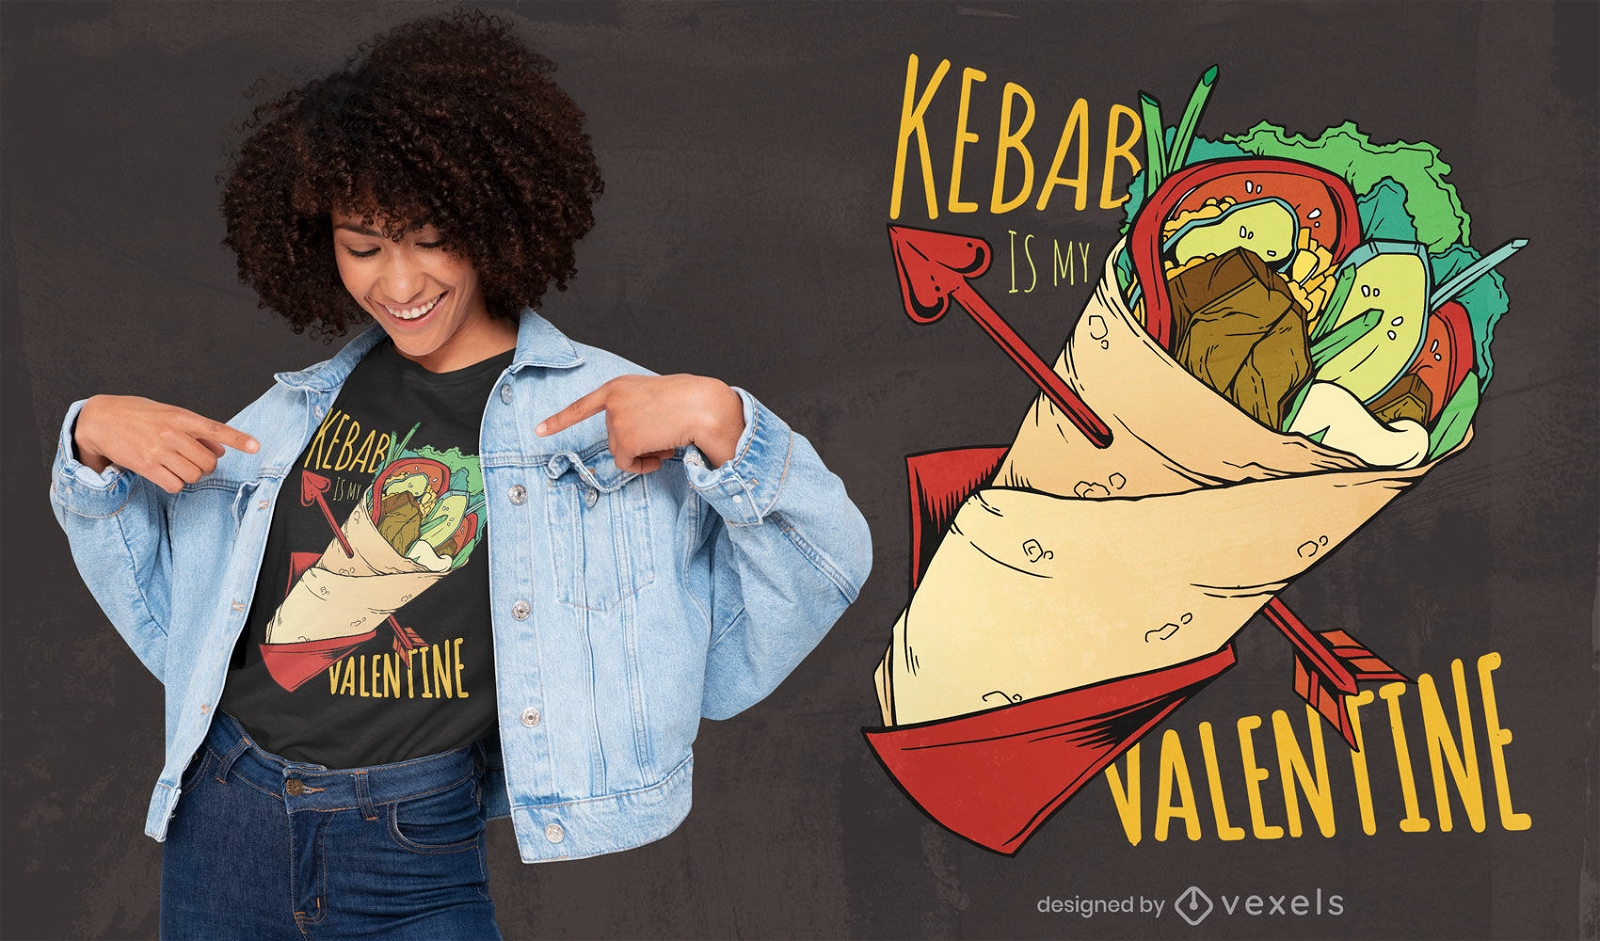 Kebab ist mein Valentins-T-Shirt-Design